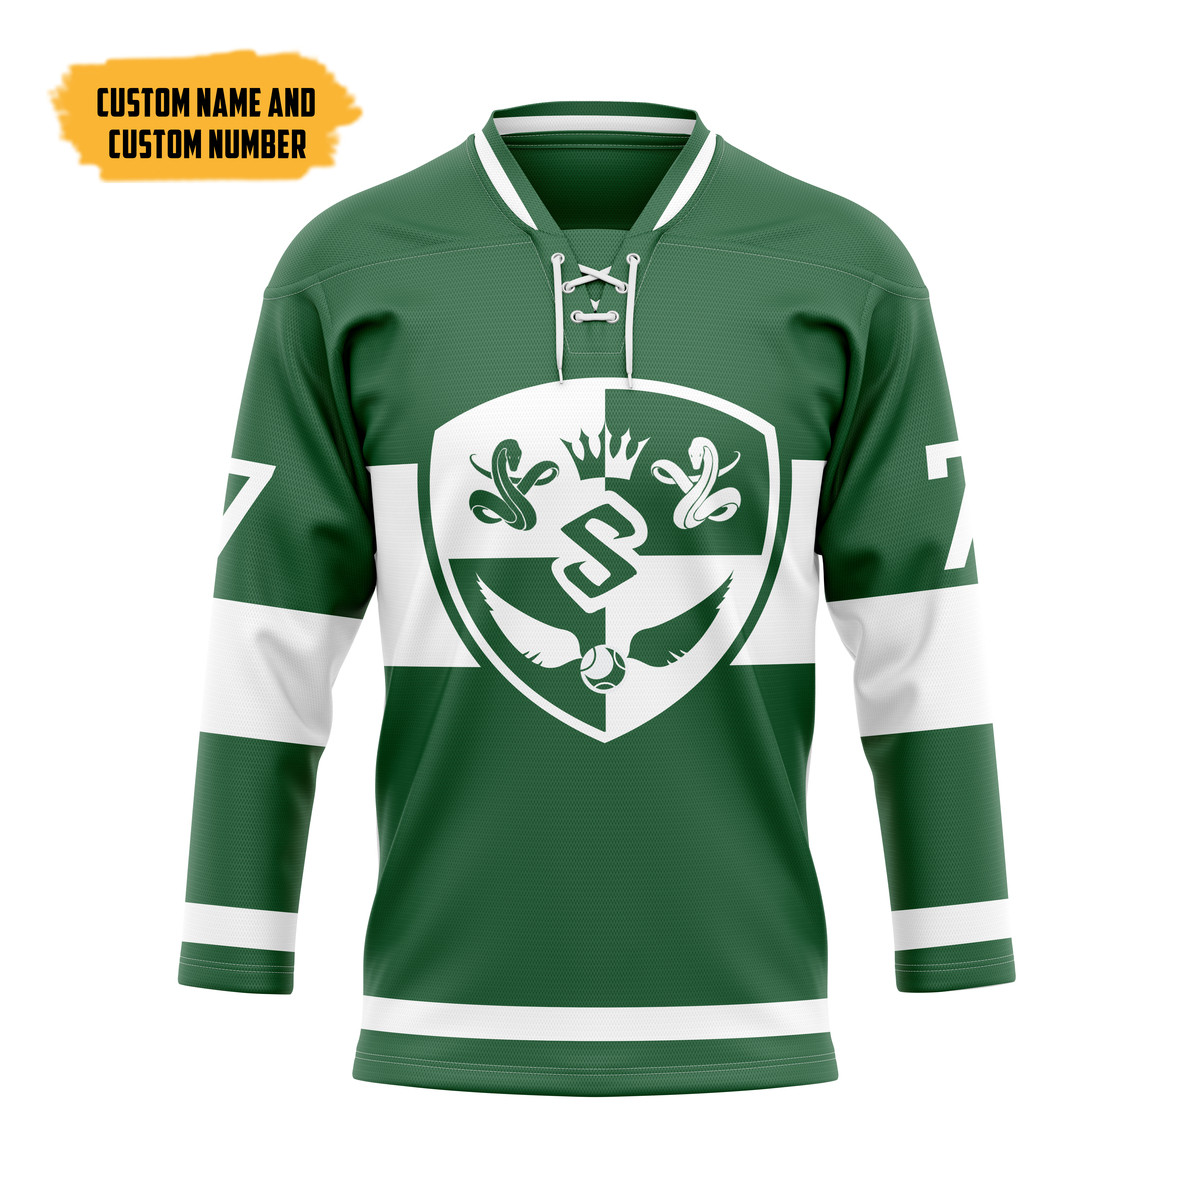 The Best Hockey Jersey Shirt 121